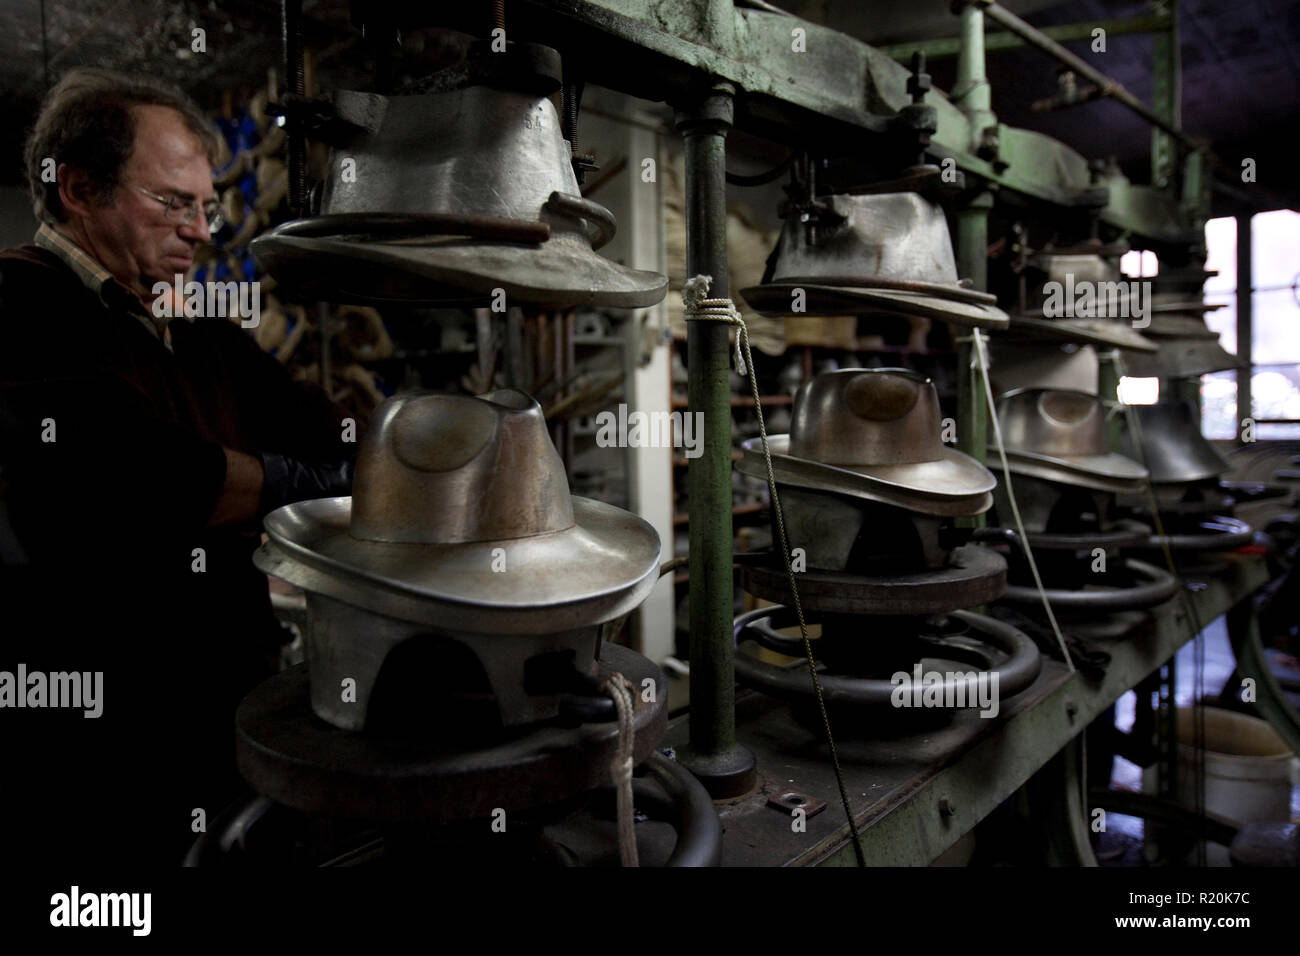 9 décembre 2009 - Coustilleres' hat factory, Septfonds, France - Jean  Claude Coustilleres chapeaux de blocage à l'Coustilleres' hat factory. Hat,  fabriqué à partir de feutre ou de paille, sont bloqués en